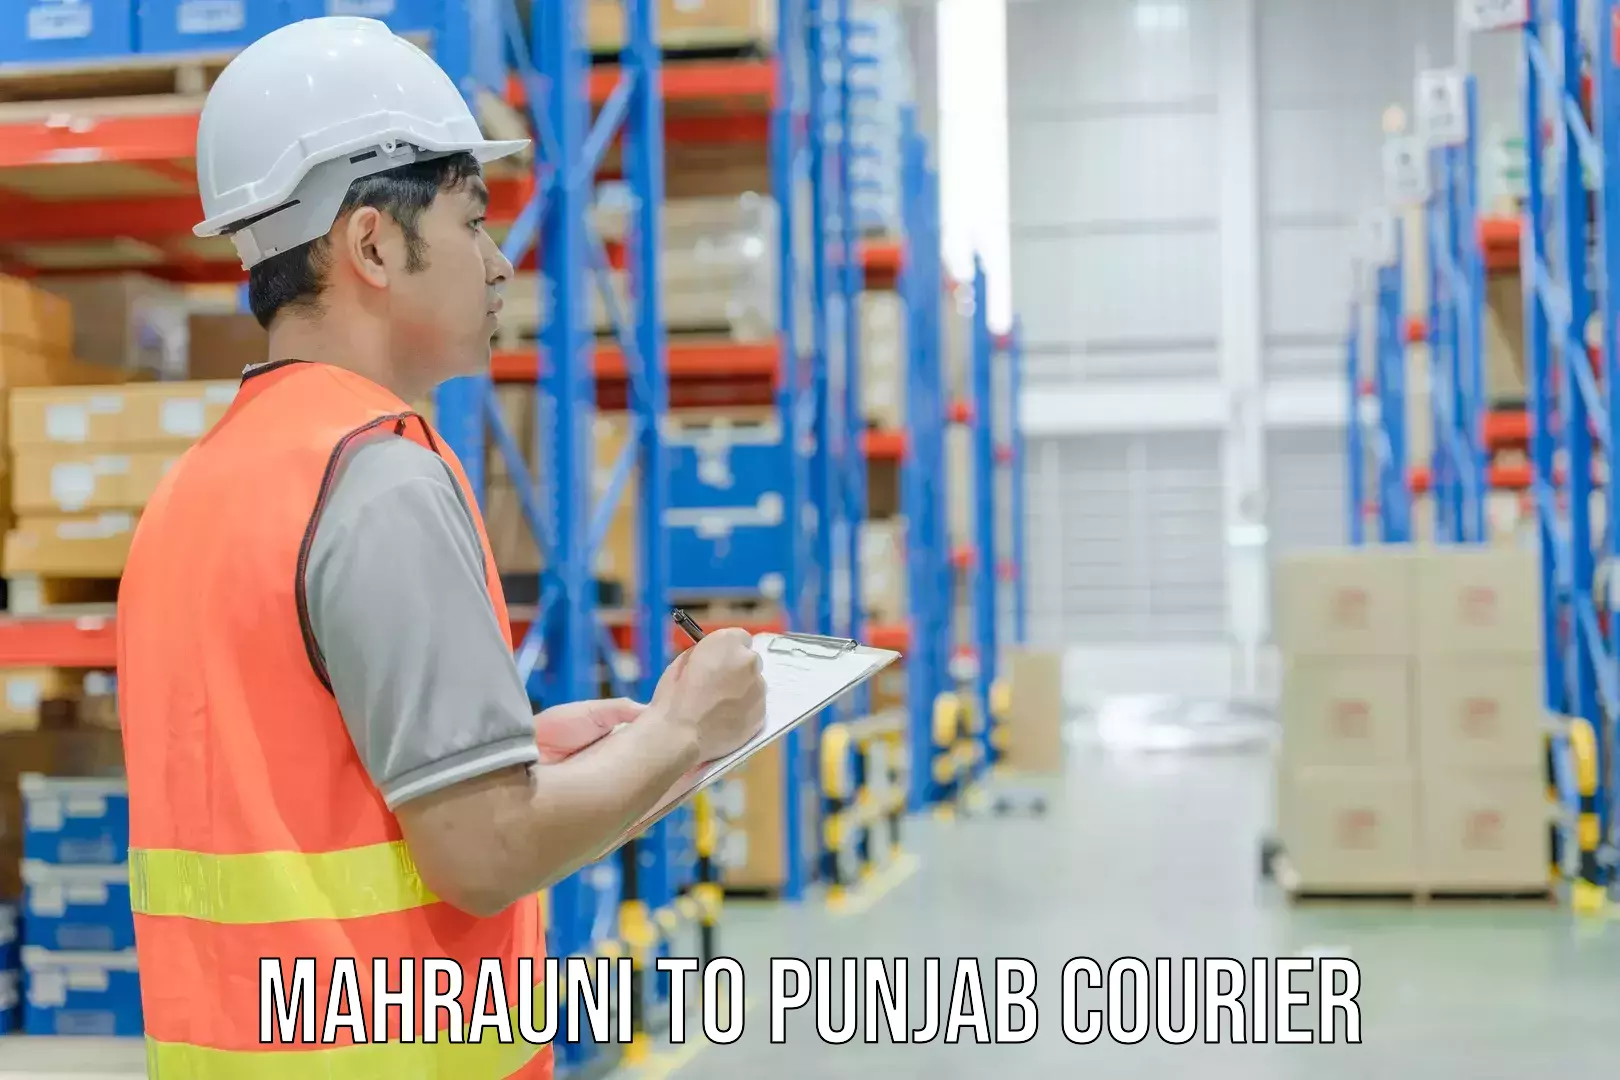 Comprehensive shipping network Mahrauni to Punjab